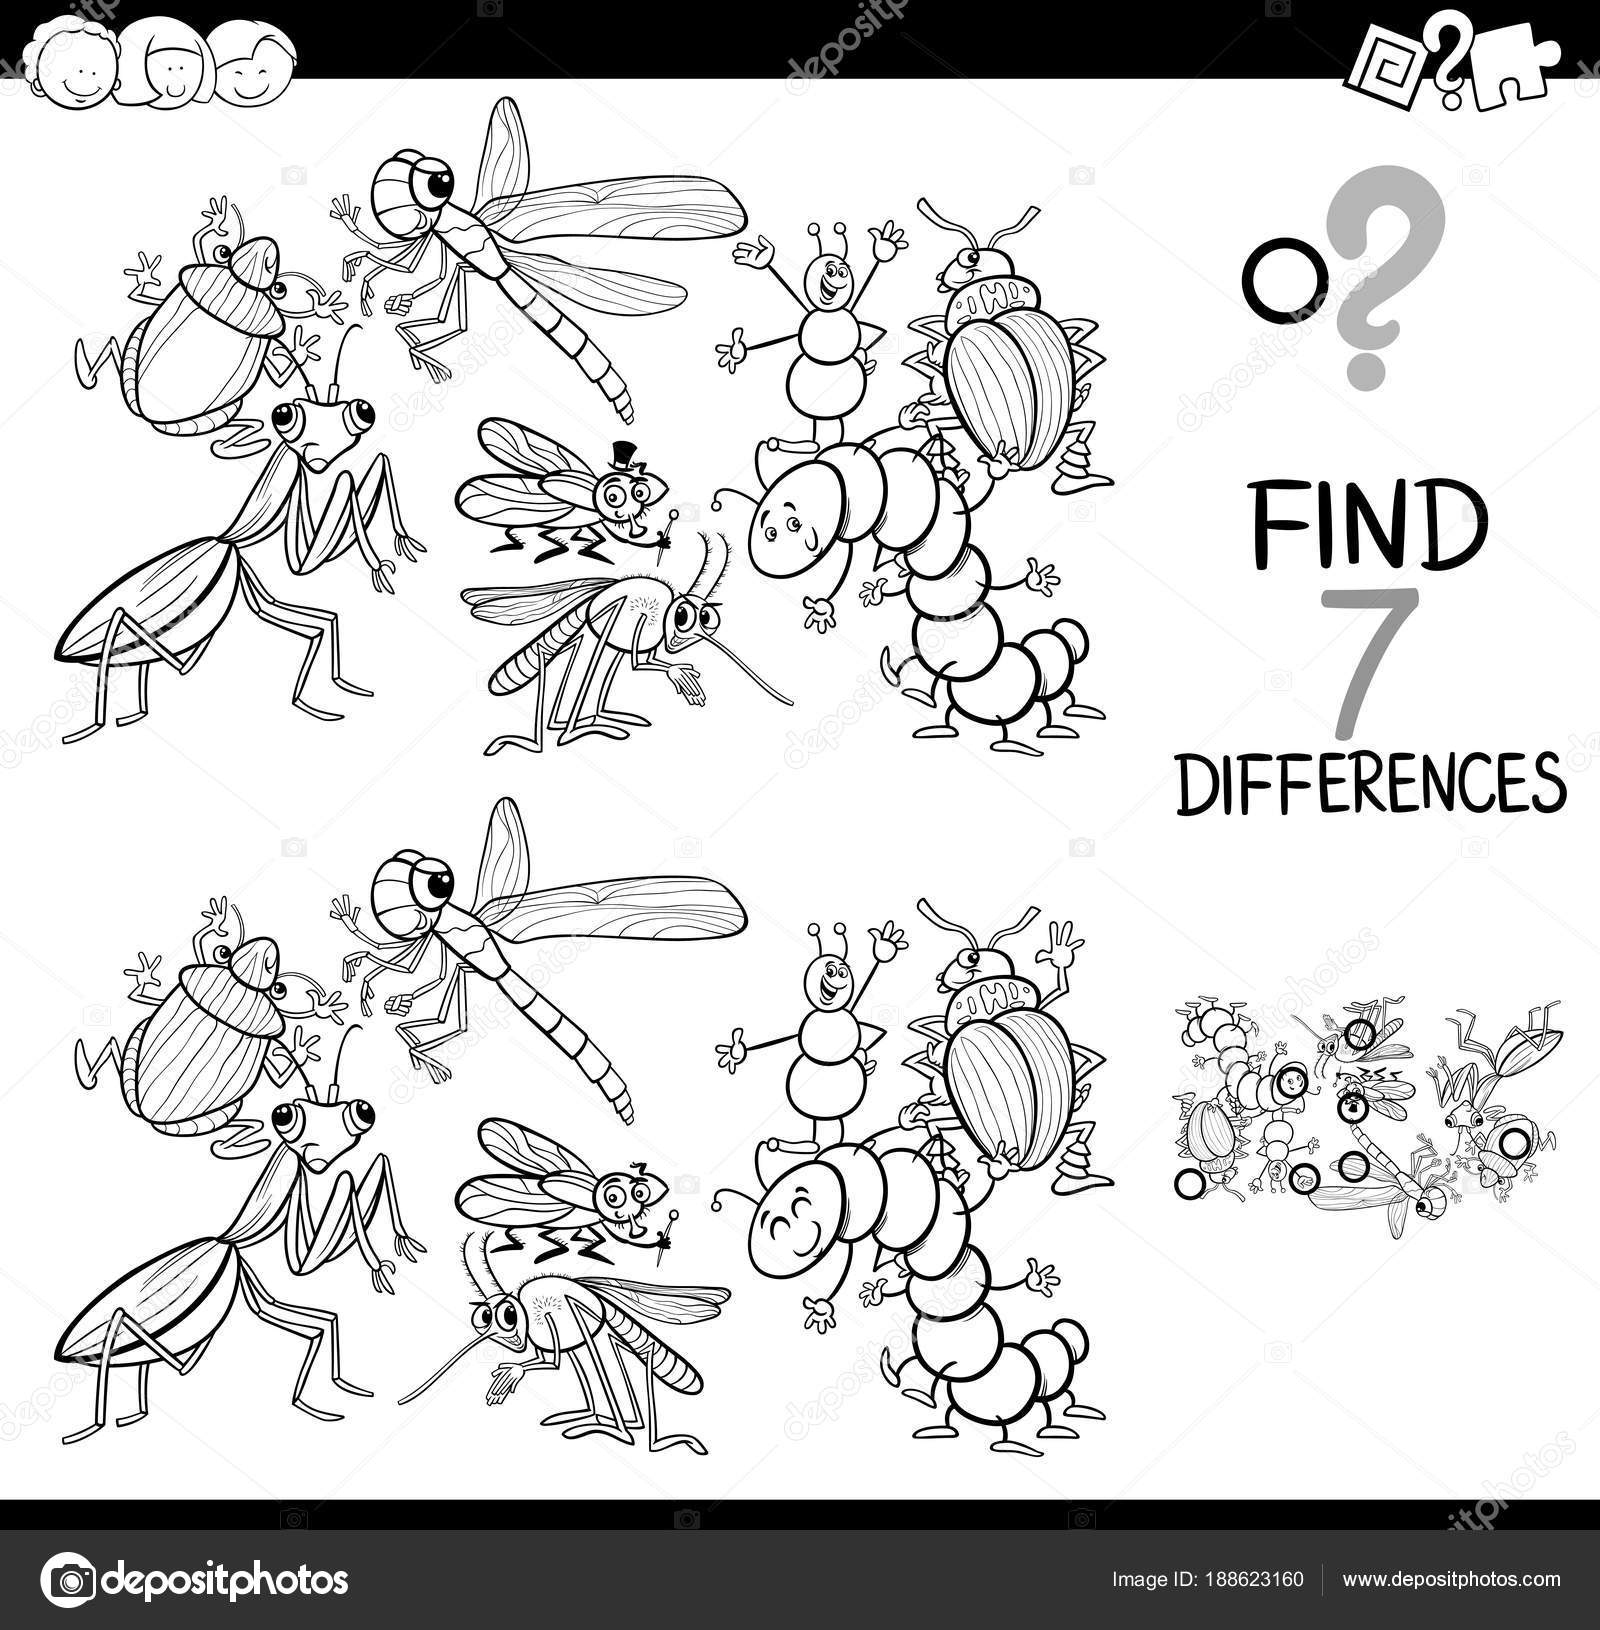 Jogo de quebra-cabeça com personagens animais insetos engraçados 1